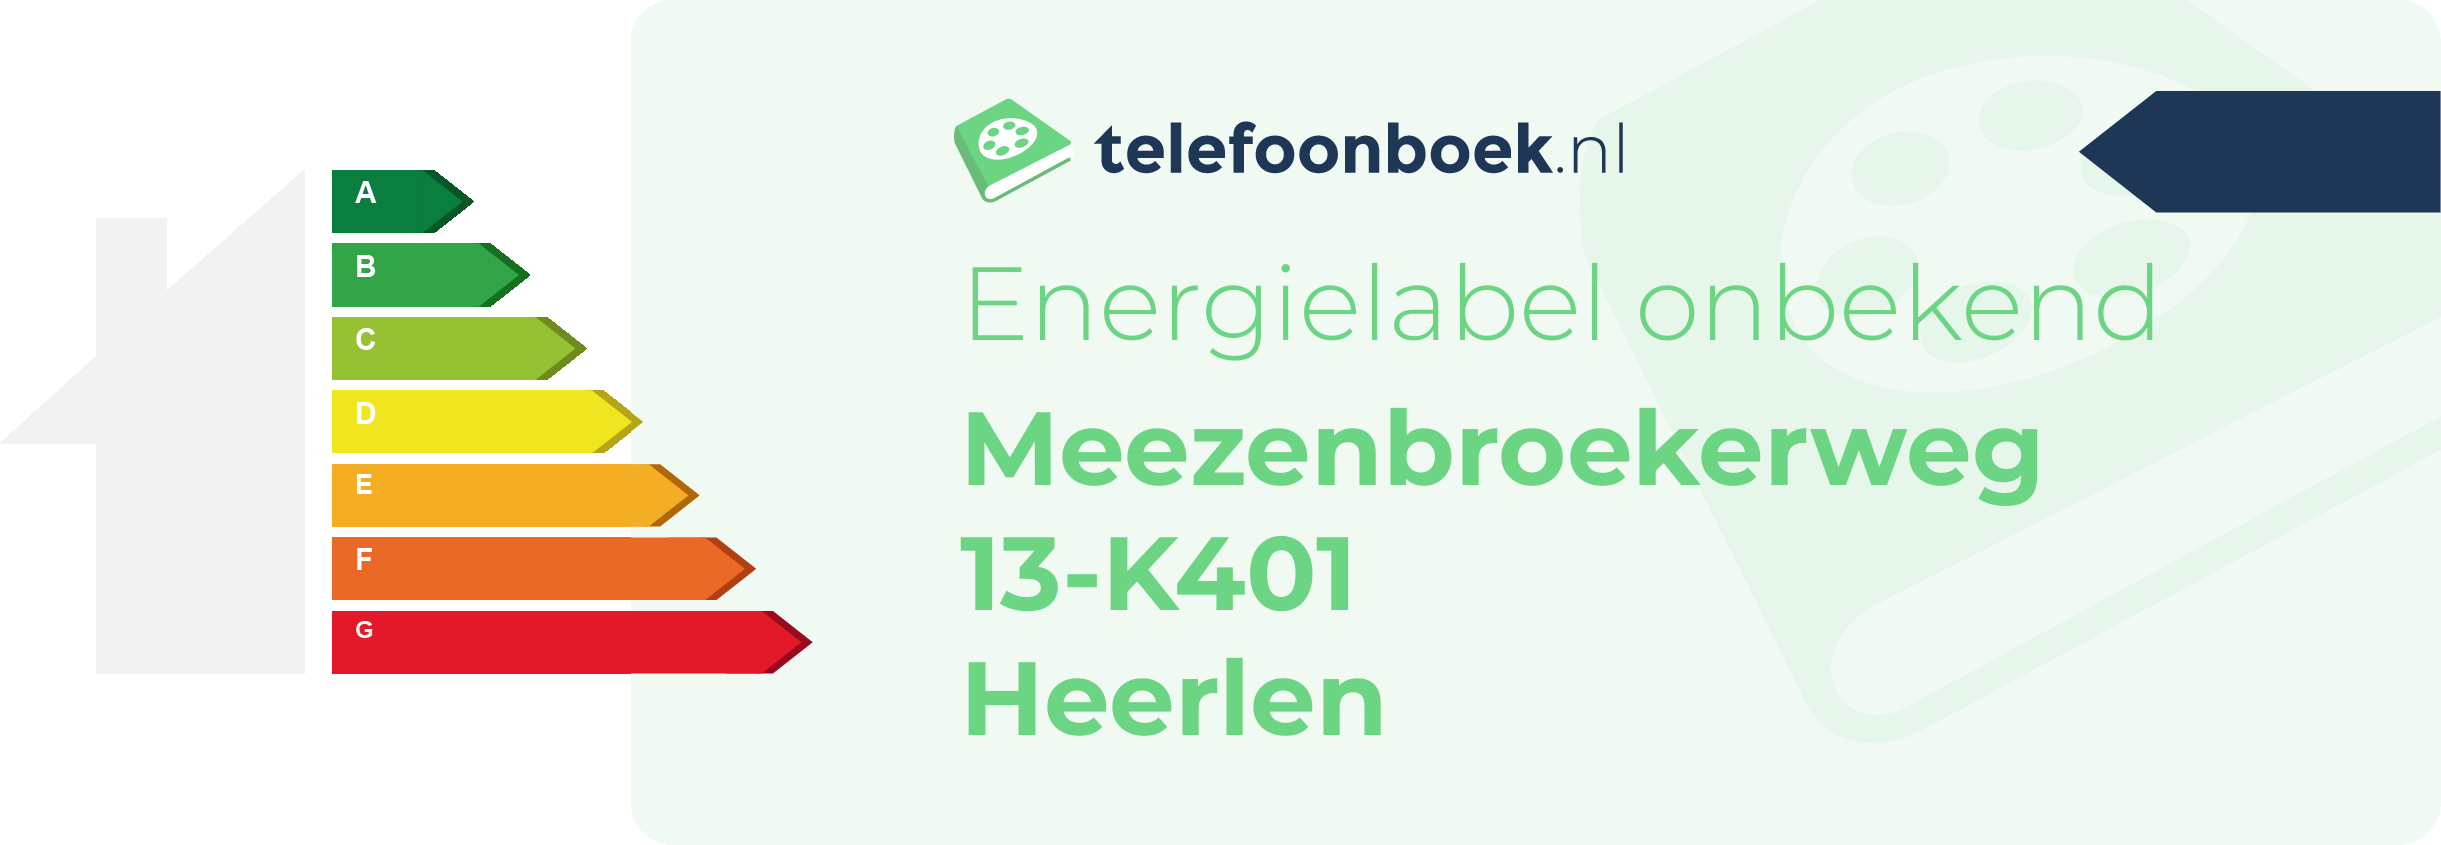 Energielabel Meezenbroekerweg 13-K401 Heerlen